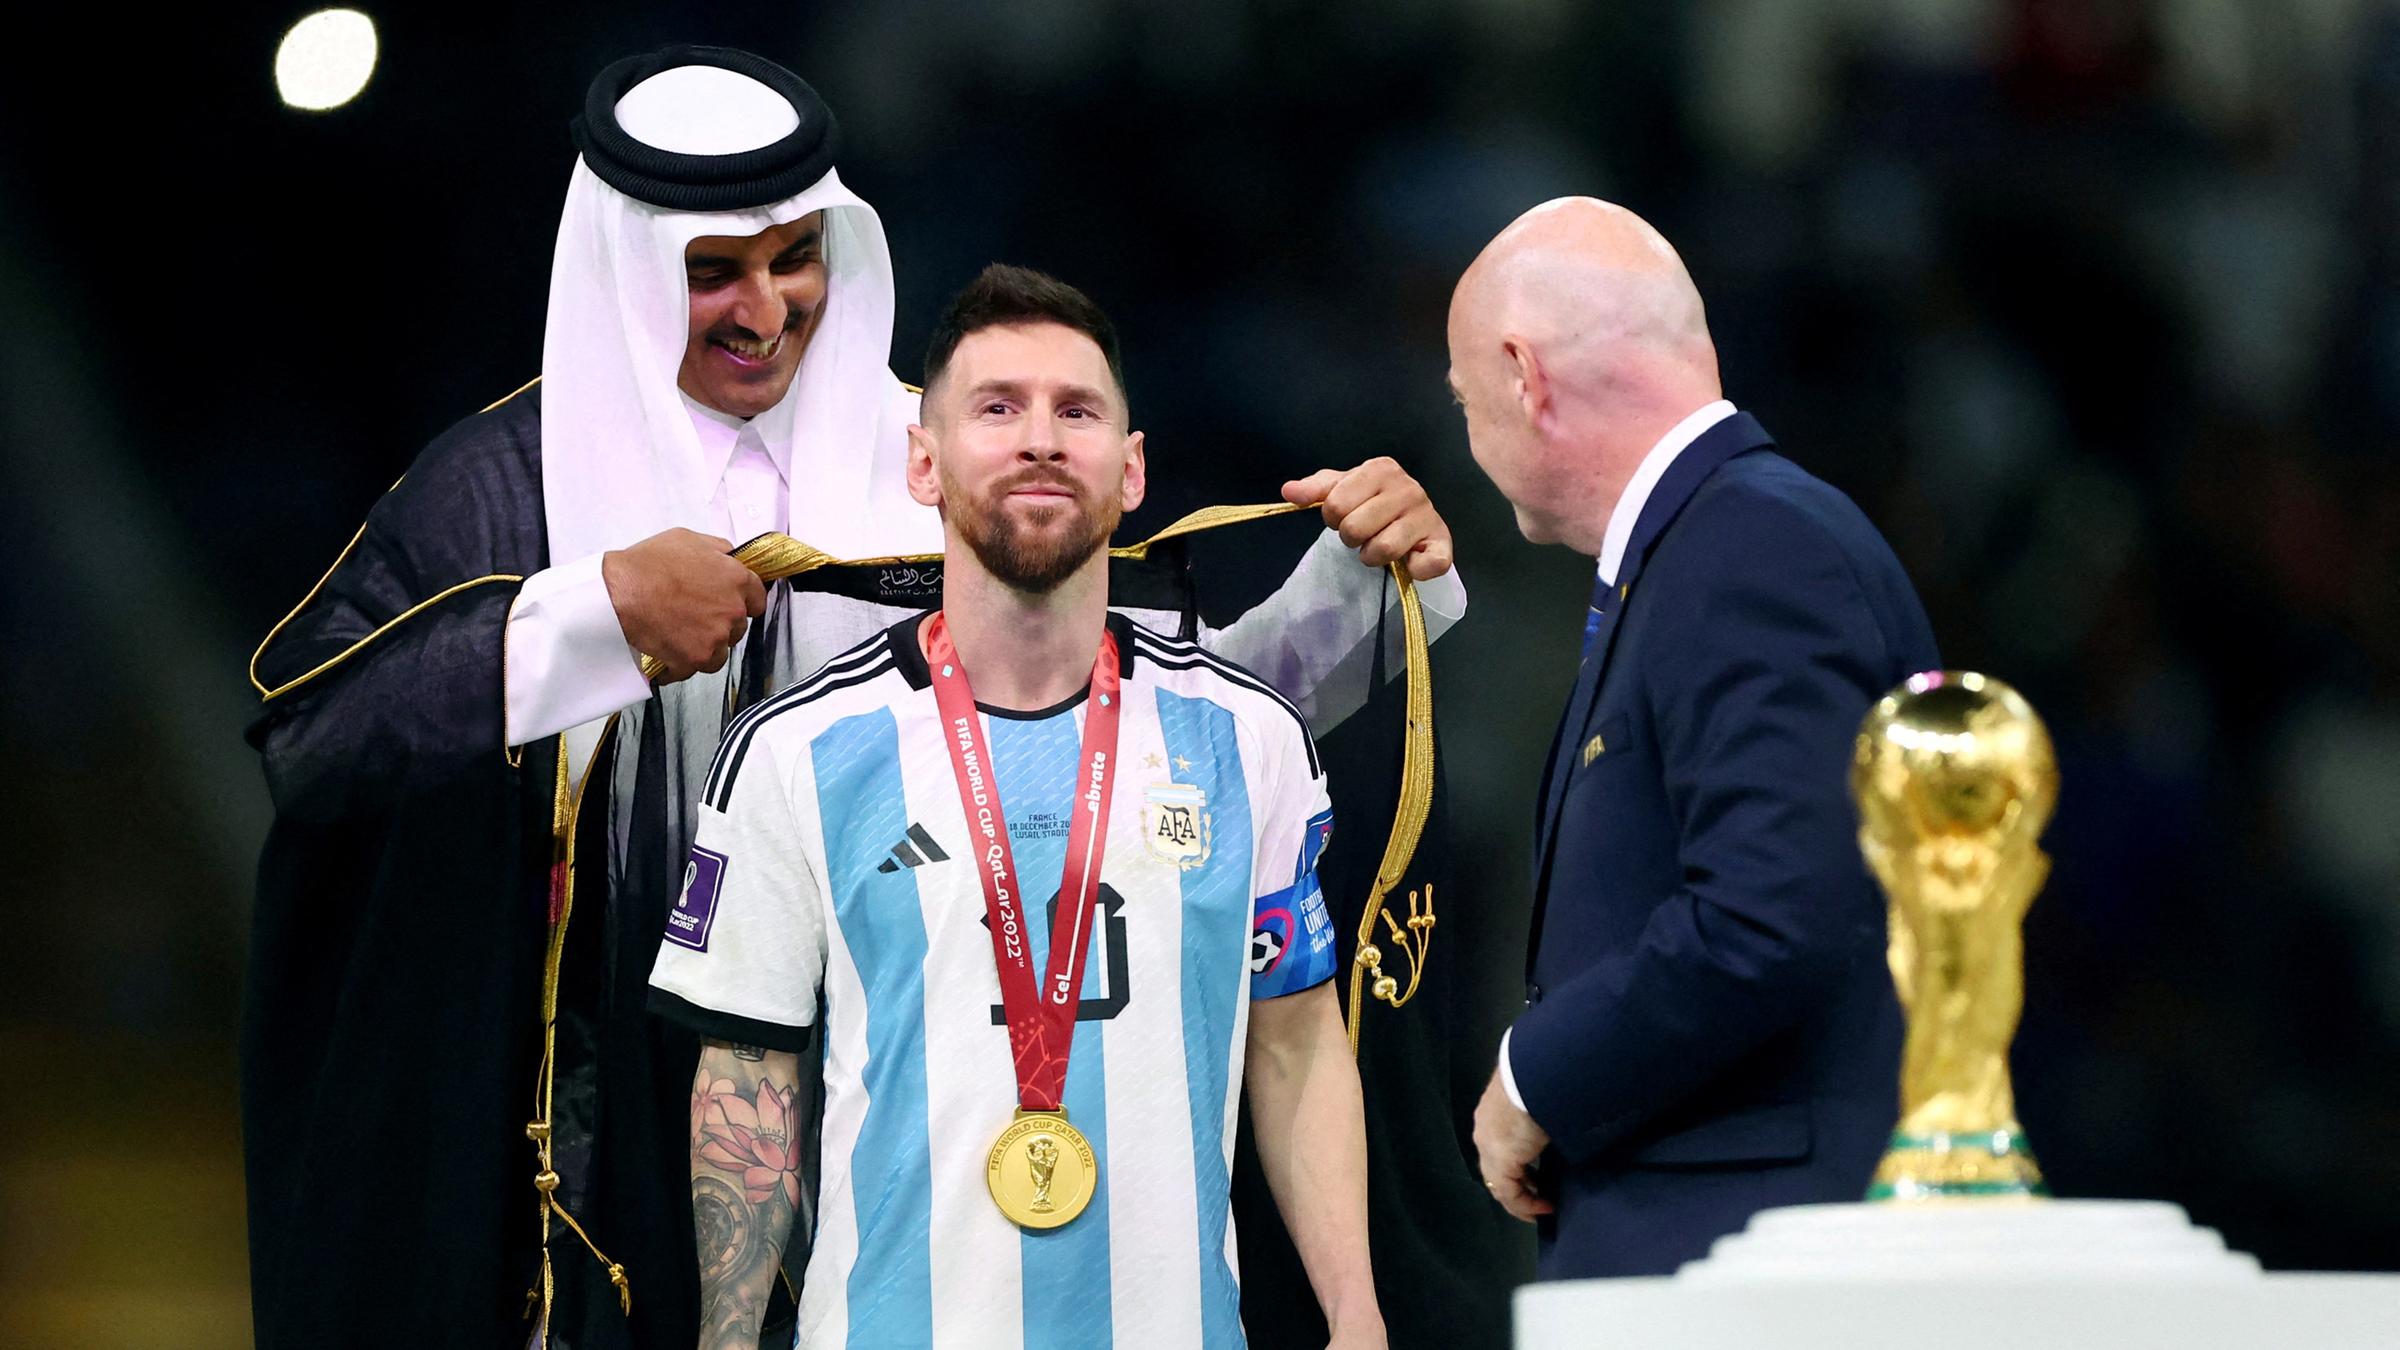 Nach der WM: Was wird aus den Stadien in Katar? - ZDFheute